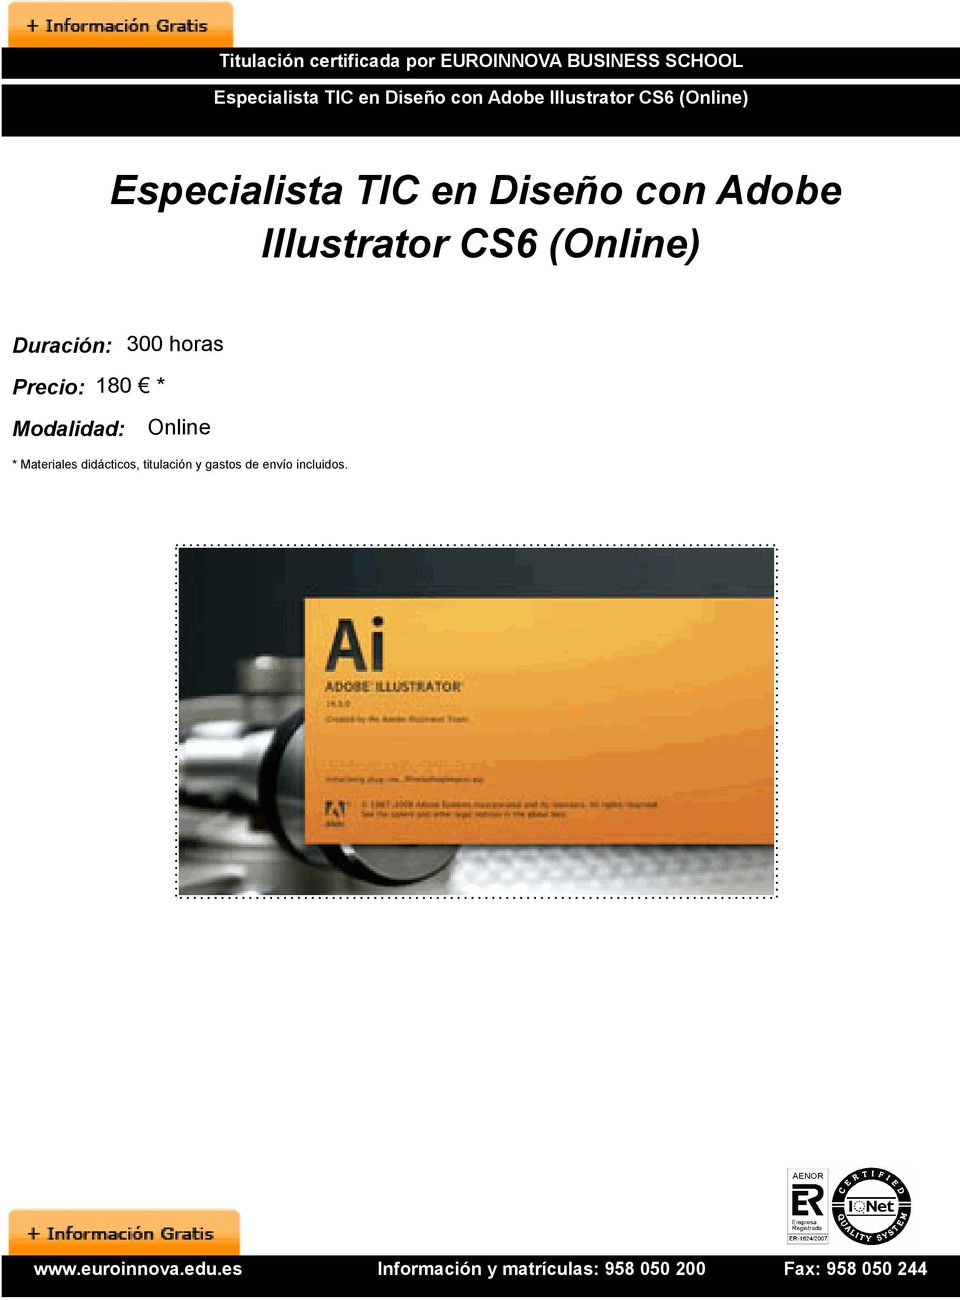 Adobe Illustrator CS6 (Online) Duración: 300 horas Precio: 180 *